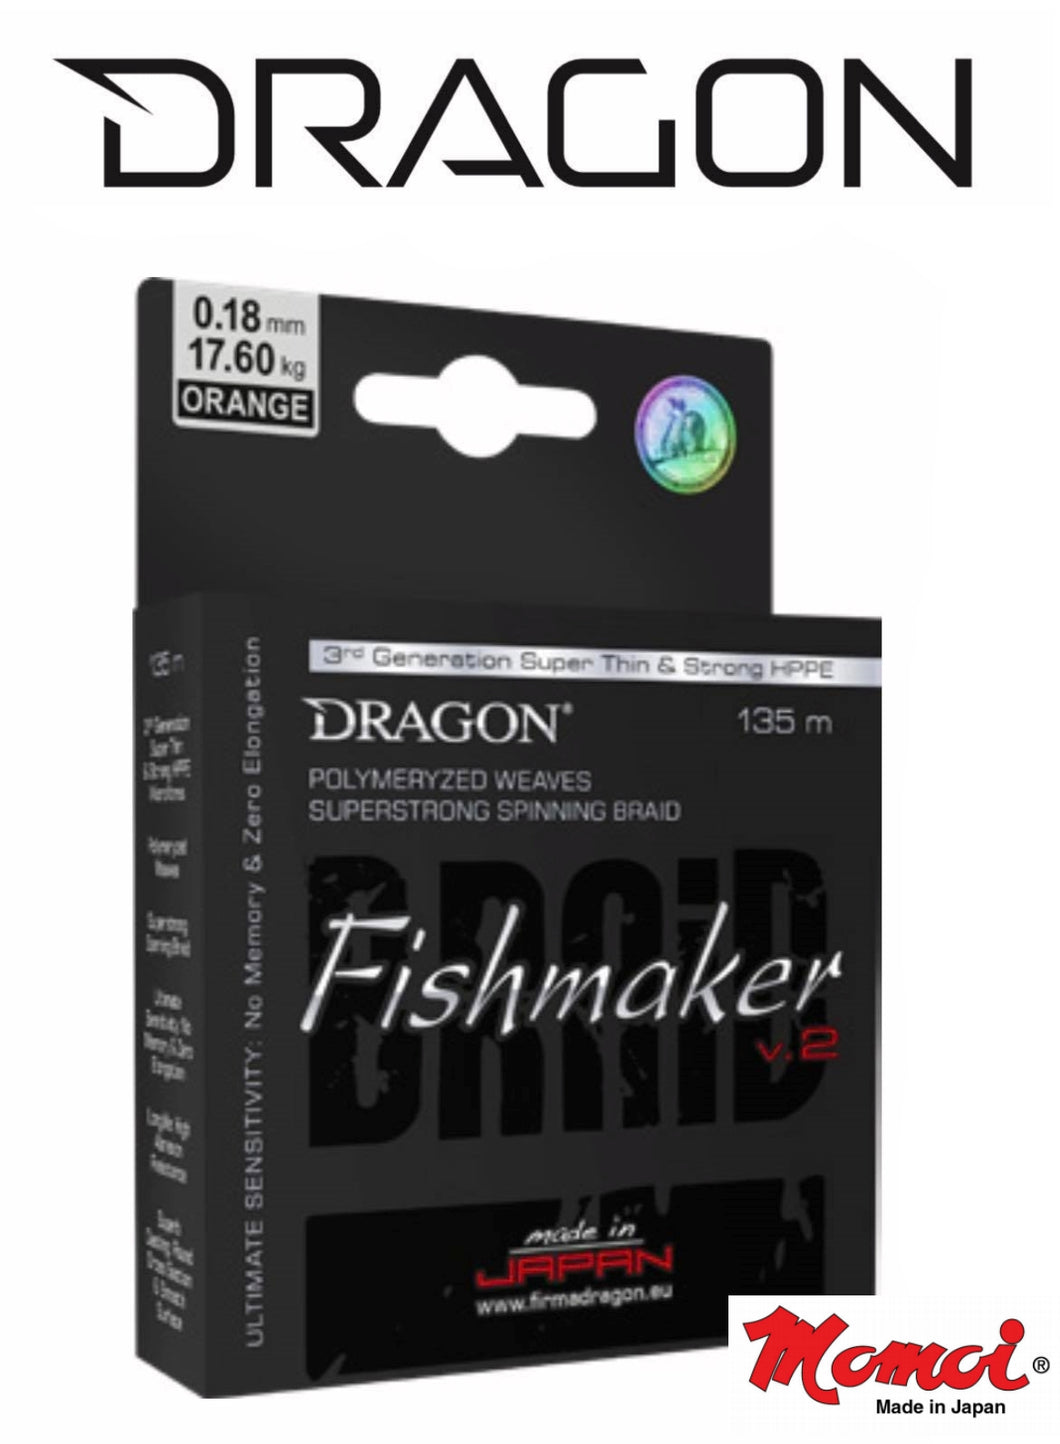 Dragon Fishmaker V.2 fishing braid. 135m line.